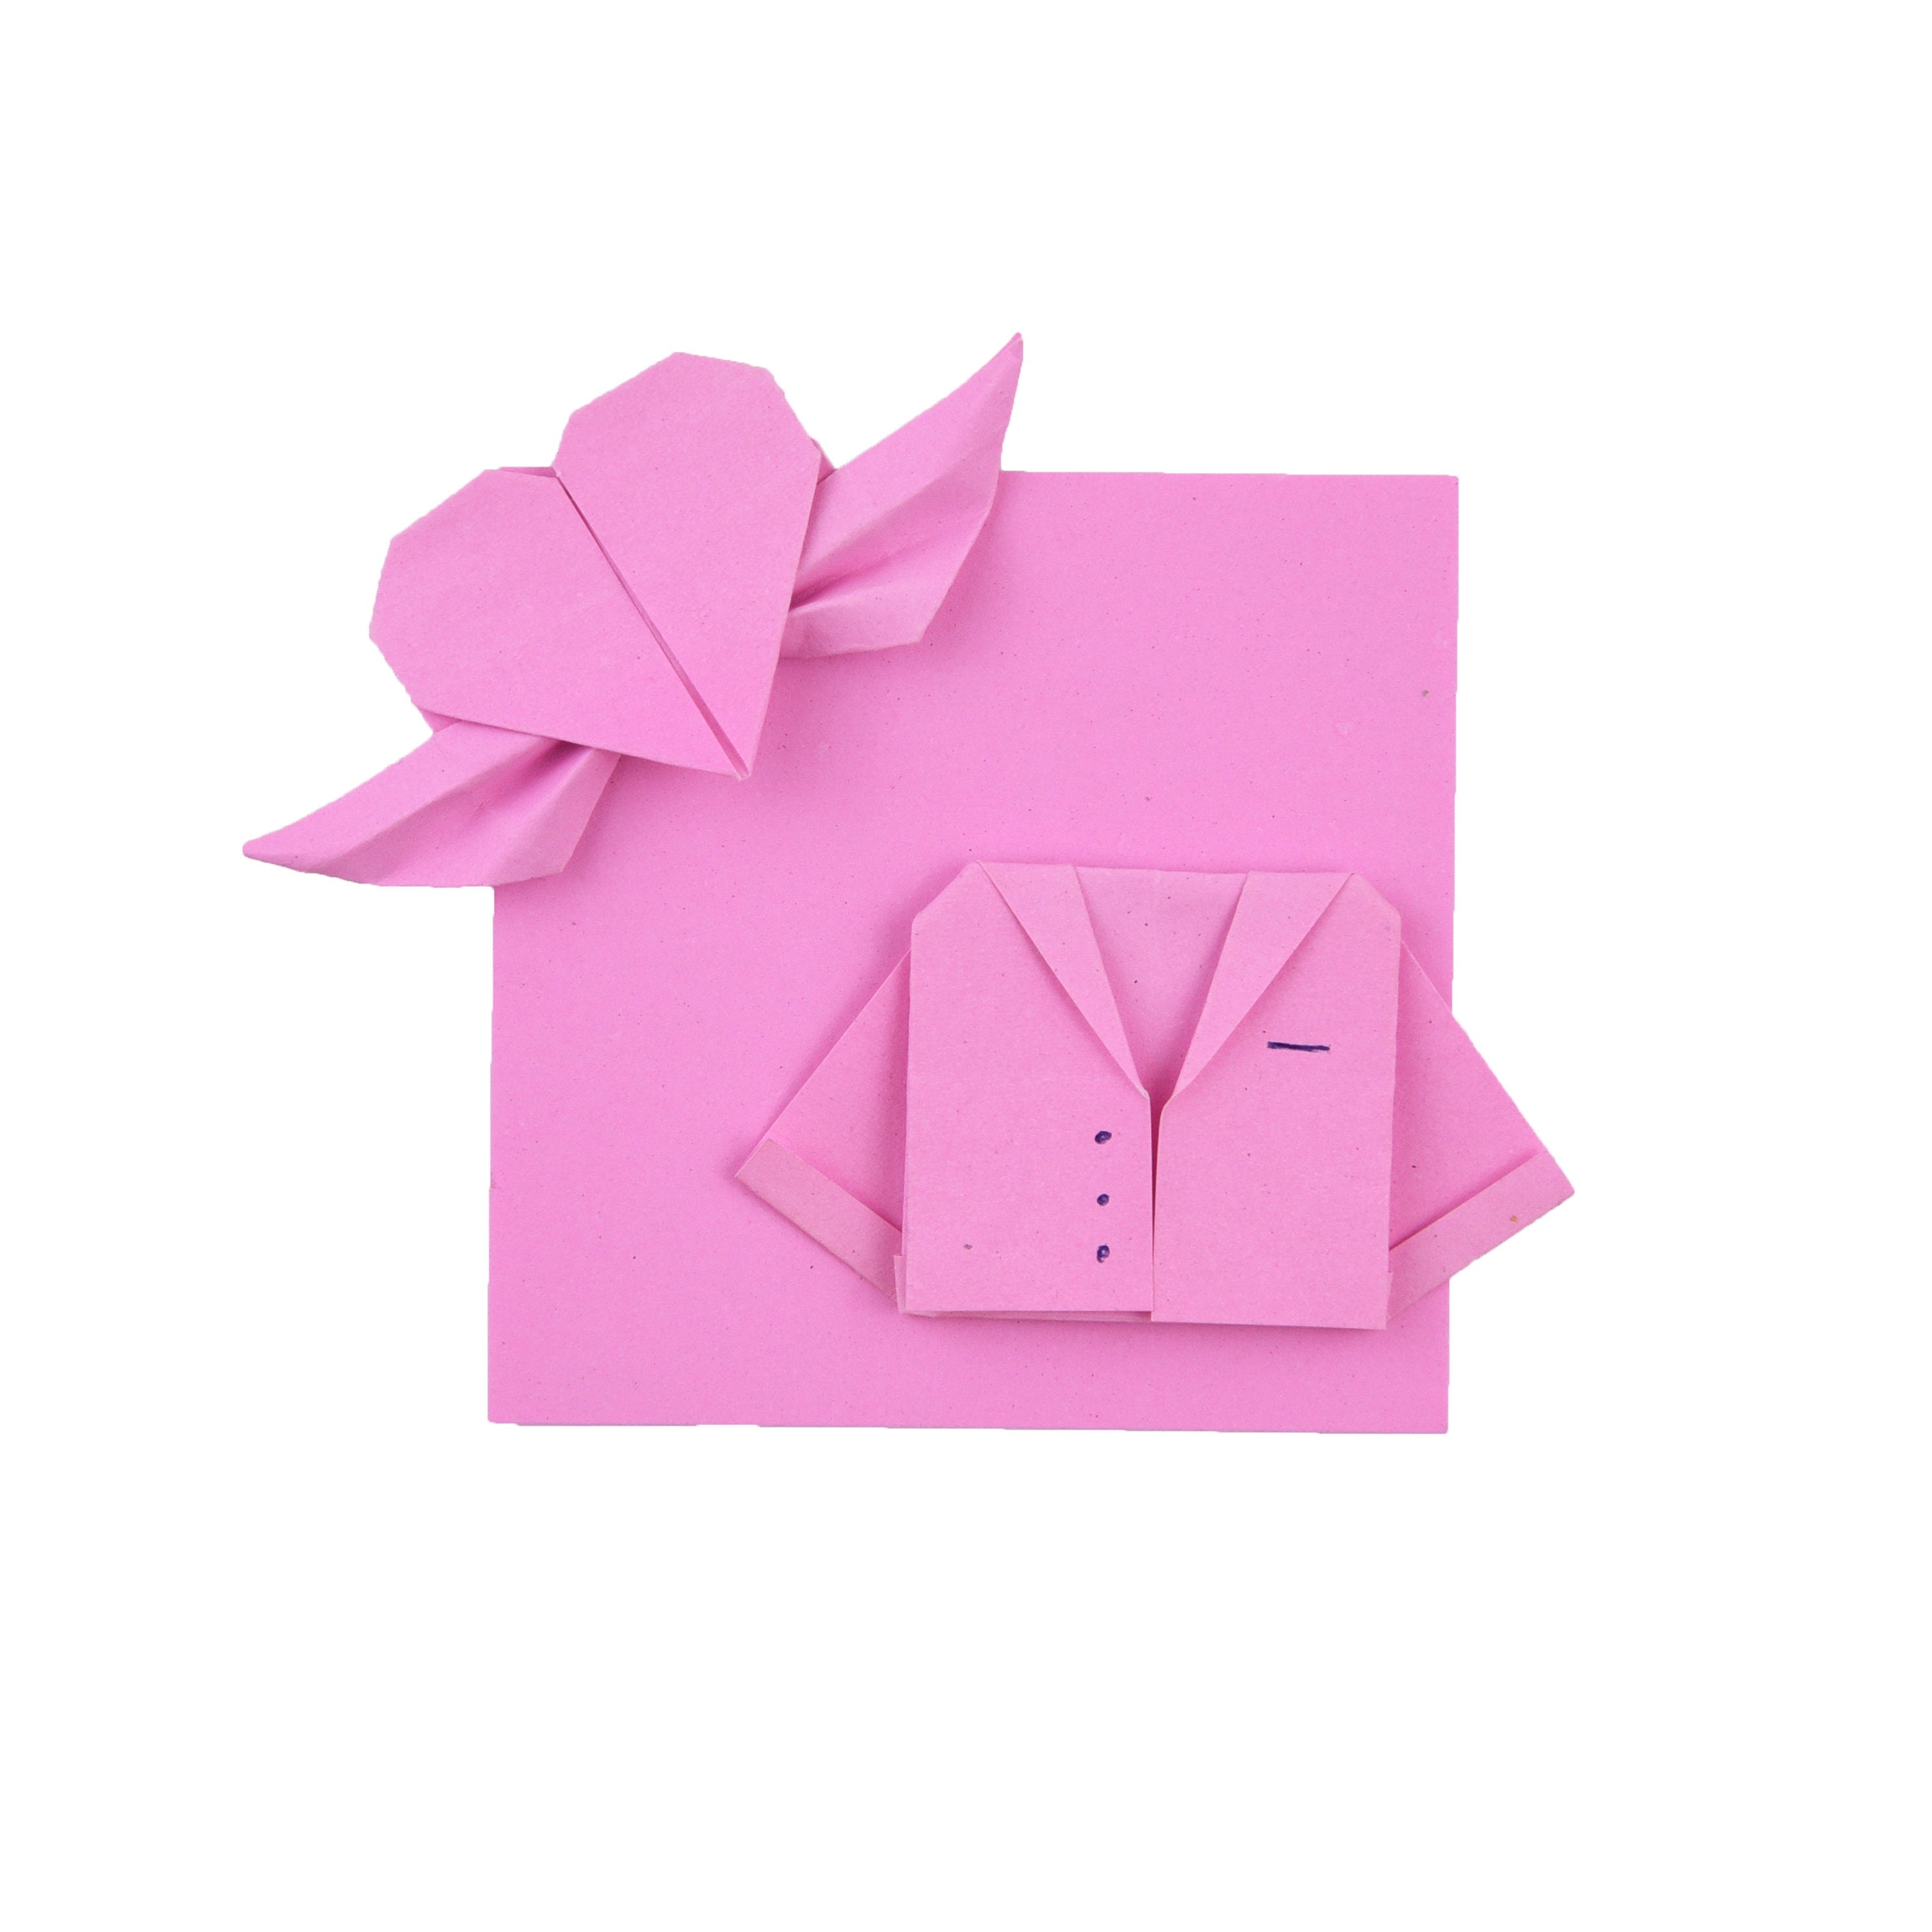 100 Hojas de Papel Origami - 6x6 pulgadas - Paquete de Papel Cuadrado para Plegar, Grullas de Origami y Decoración - S13